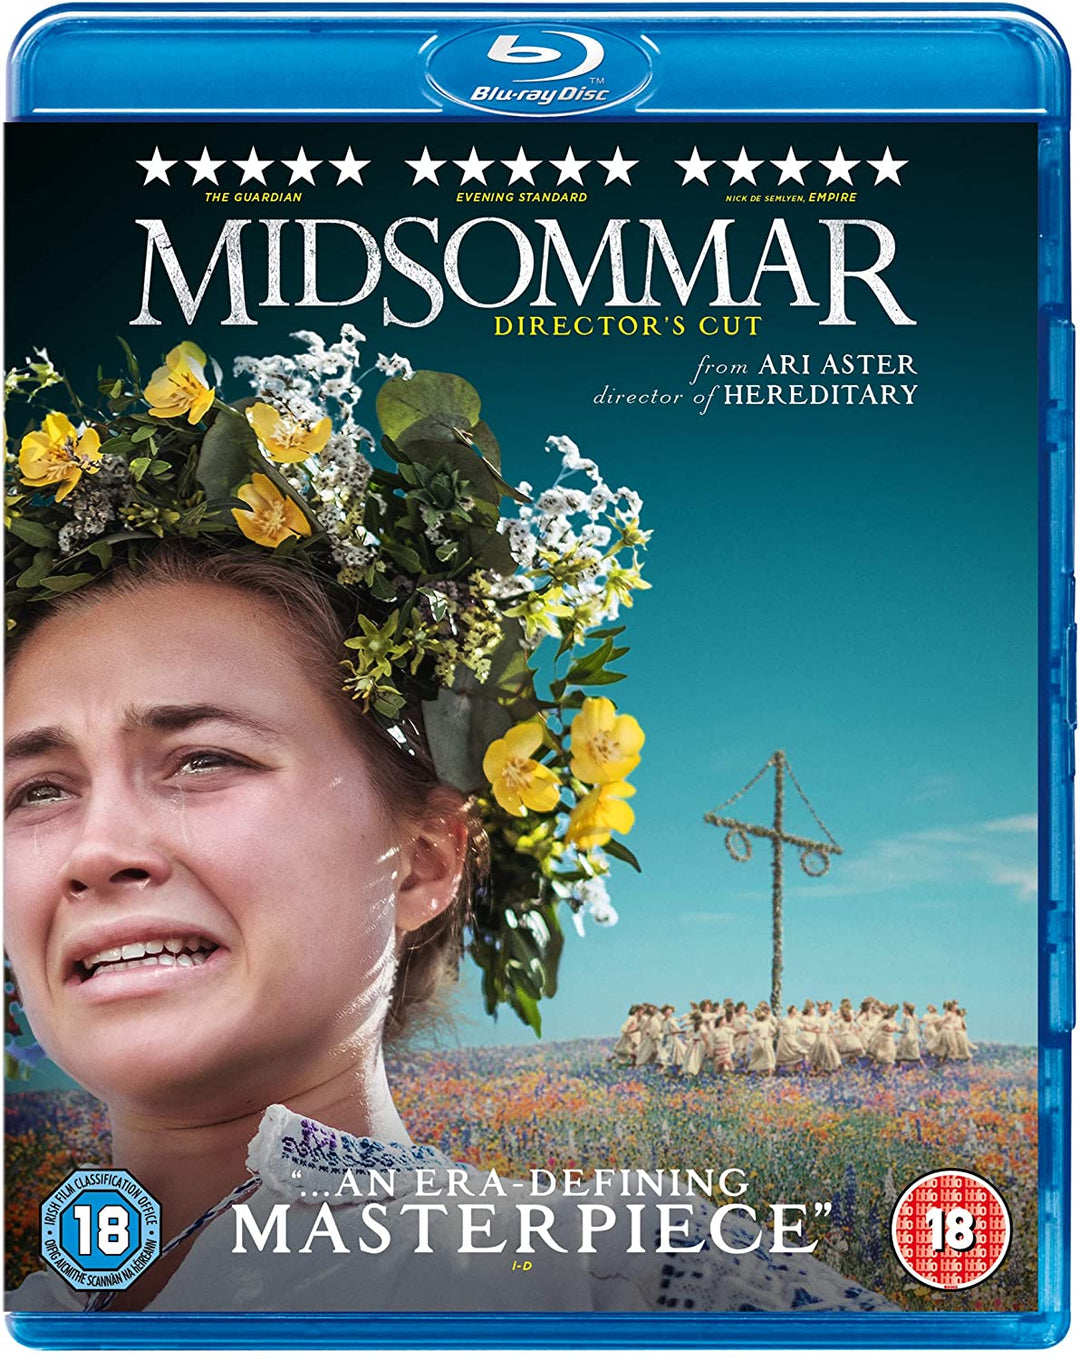 Midsommar Director's Cut – Horror/Drama [Blu-ray]